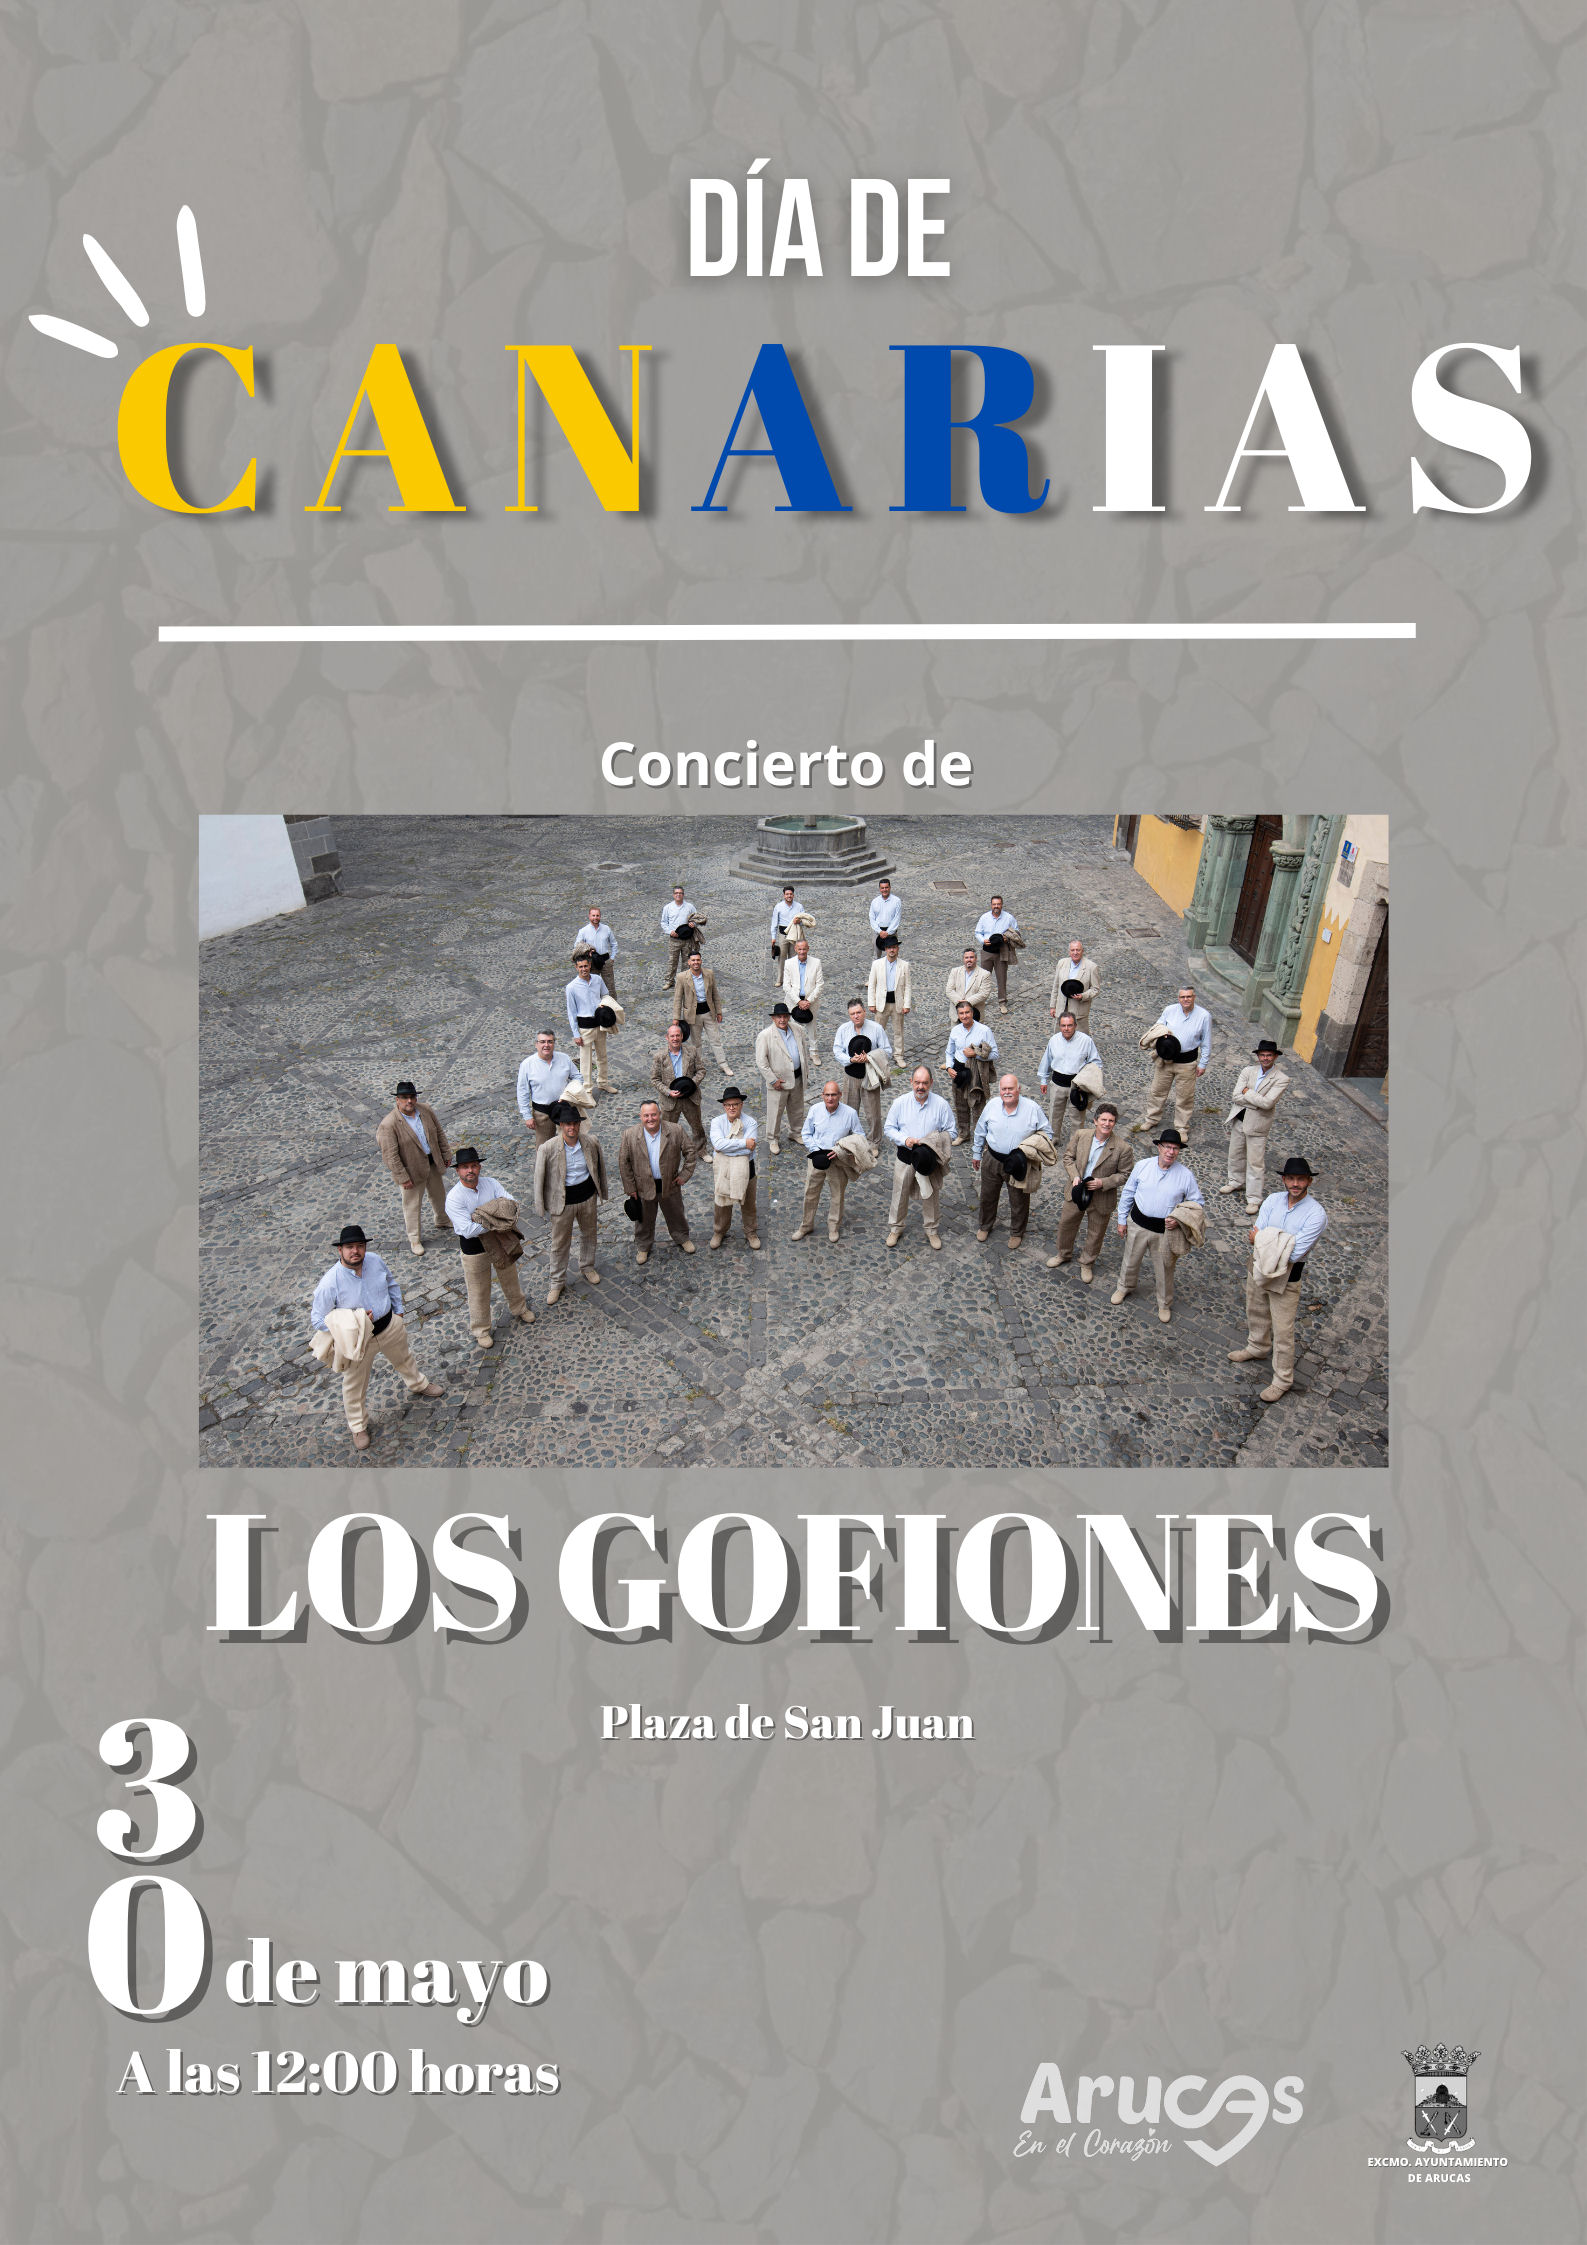 Los Gofiones actuarán en Arucas, con motivo de la celebración del Día de Canarias